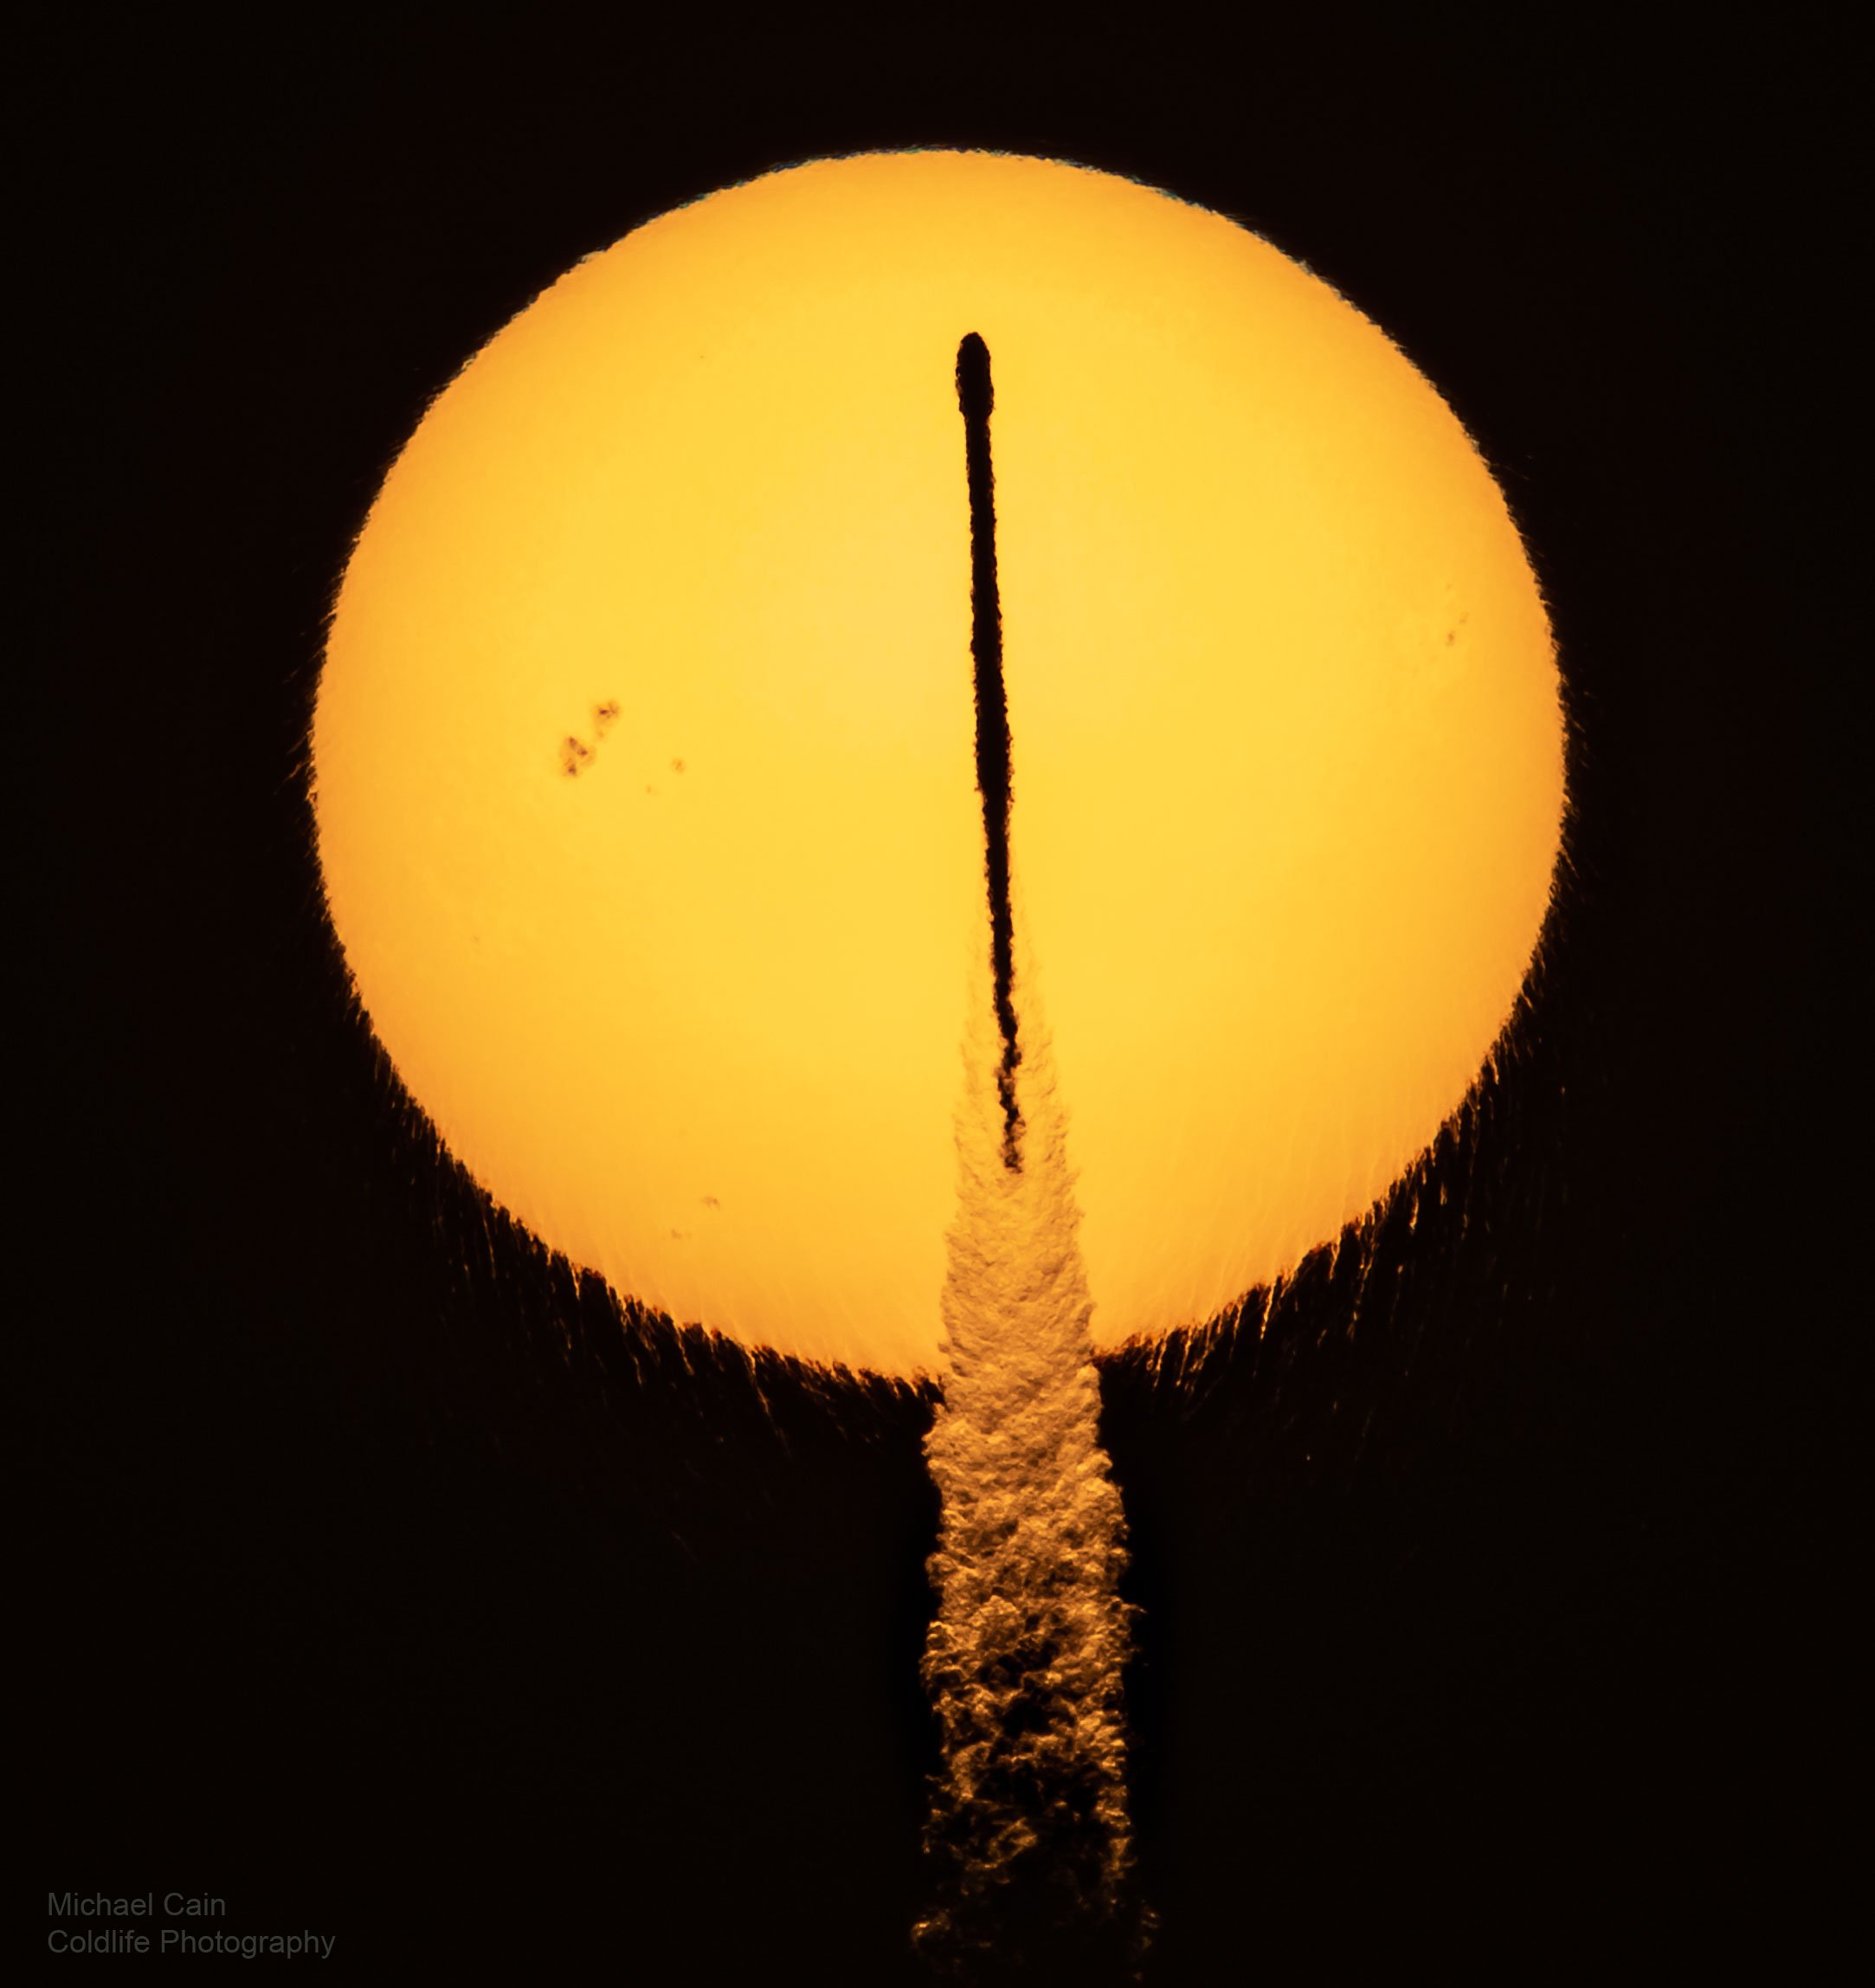 تصویر روز ناسا: گذر فالکون 9 از مقابل خورشید